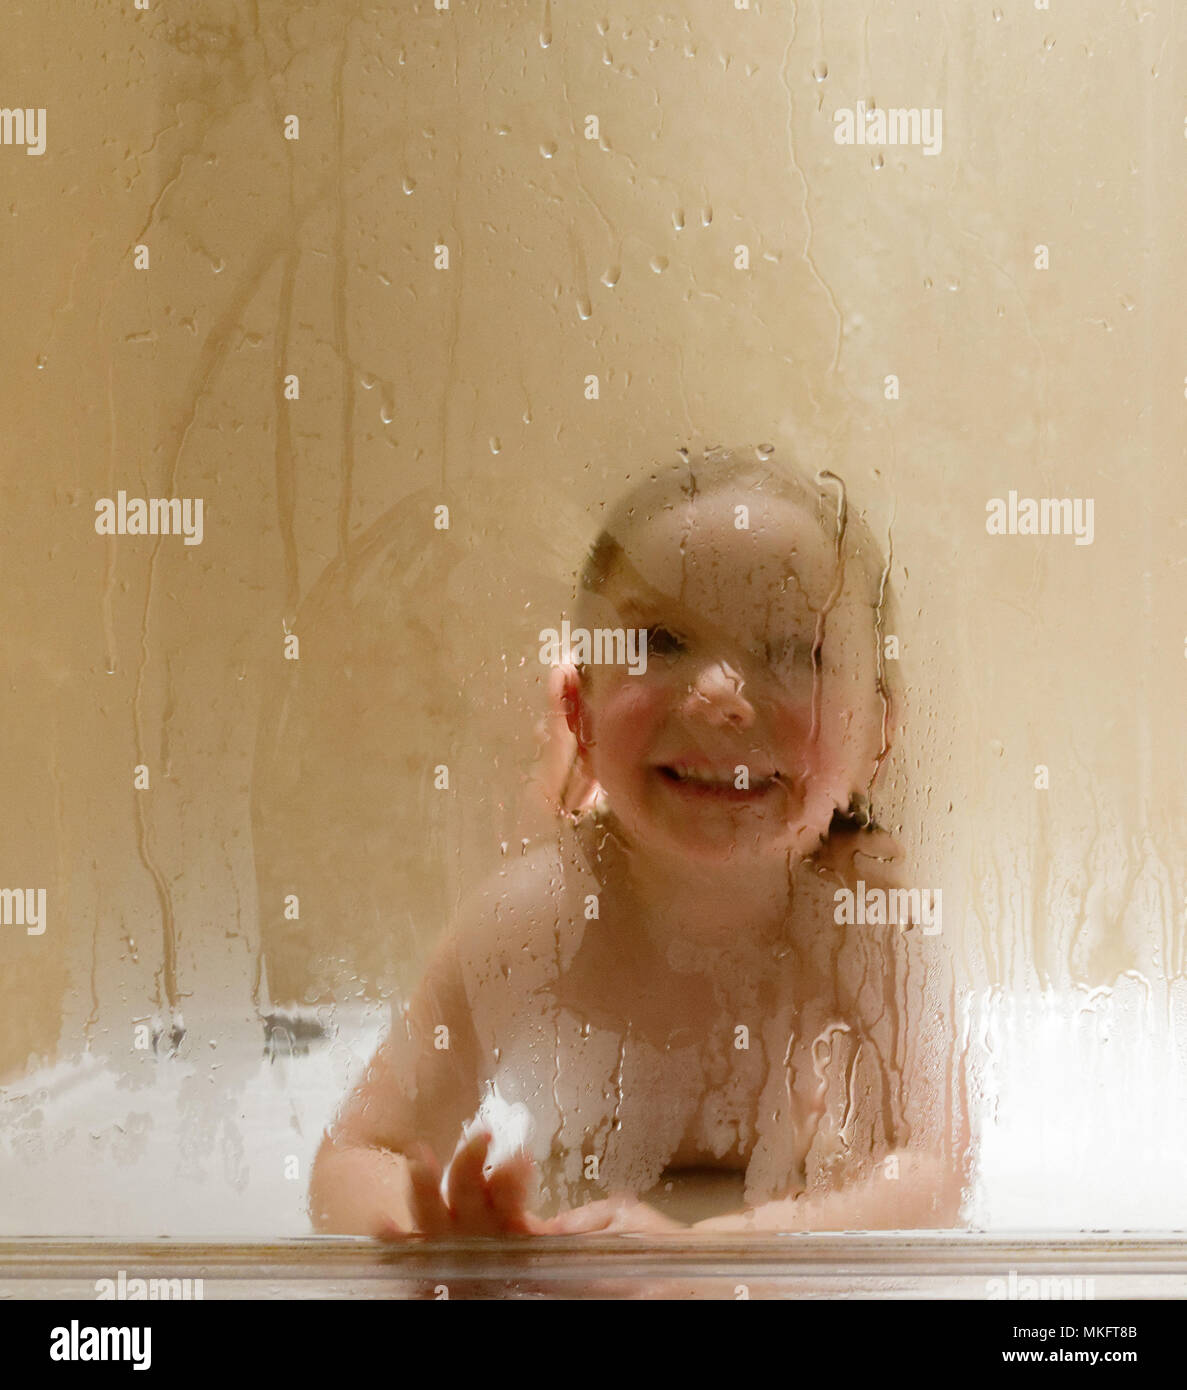 3 anni bambina immagini e fotografie stock ad alta risoluzione - Alamy